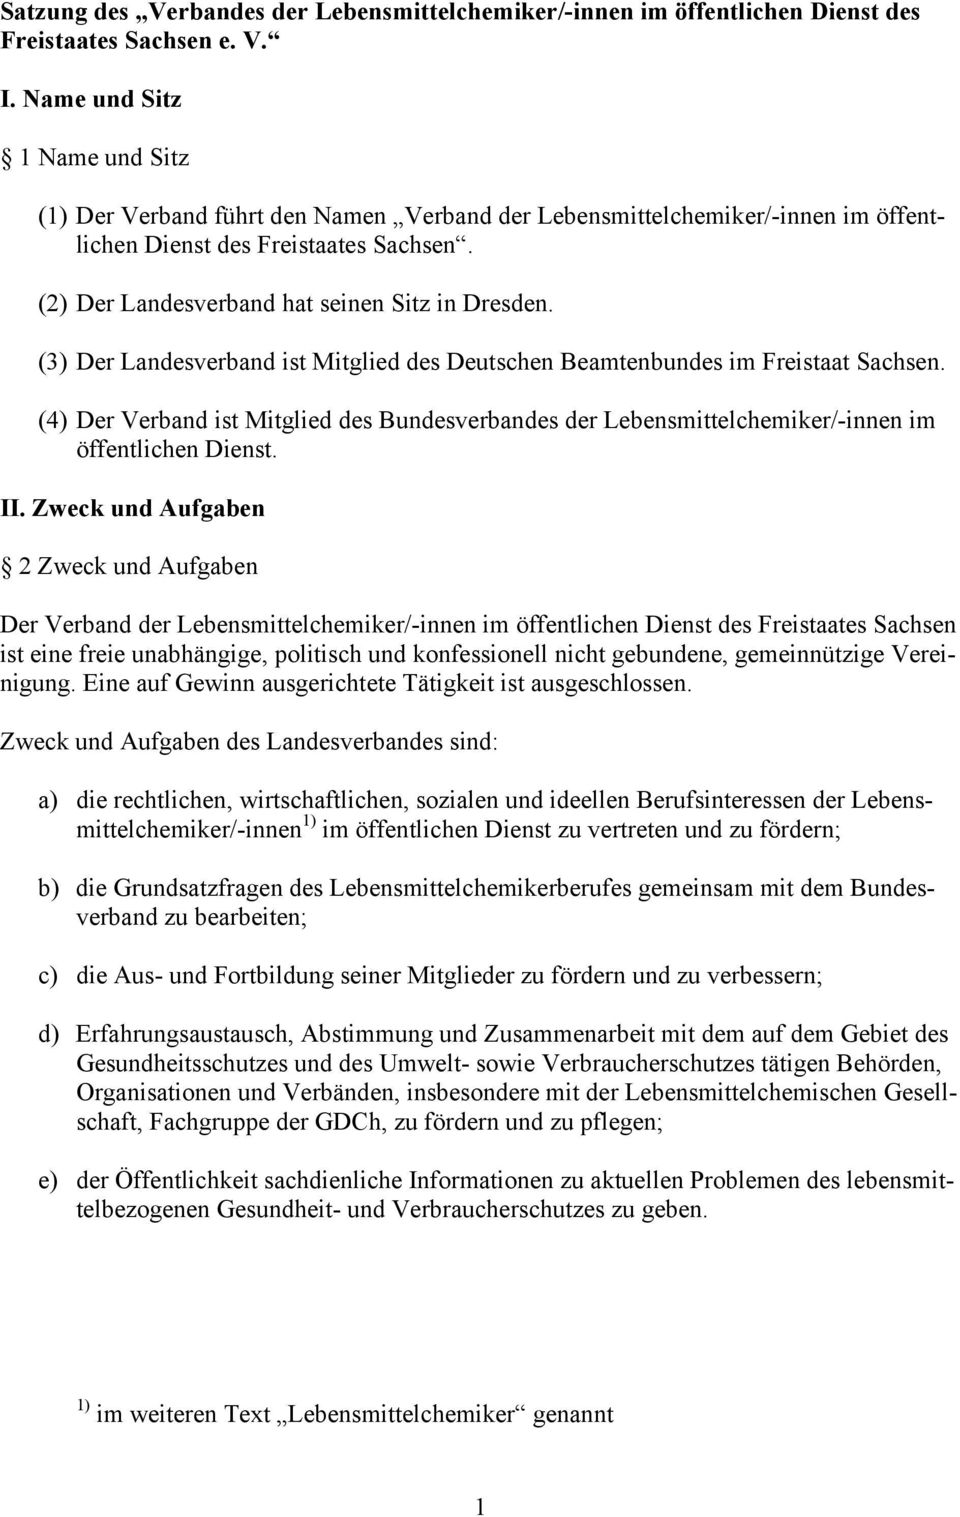 (3) Der Landesverband ist Mitglied des Deutschen Beamtenbundes im Freistaat Sachsen. (4) Der Verband ist Mitglied des Bundesverbandes der Lebensmittelchemiker/-innen im öffentlichen Dienst. II.